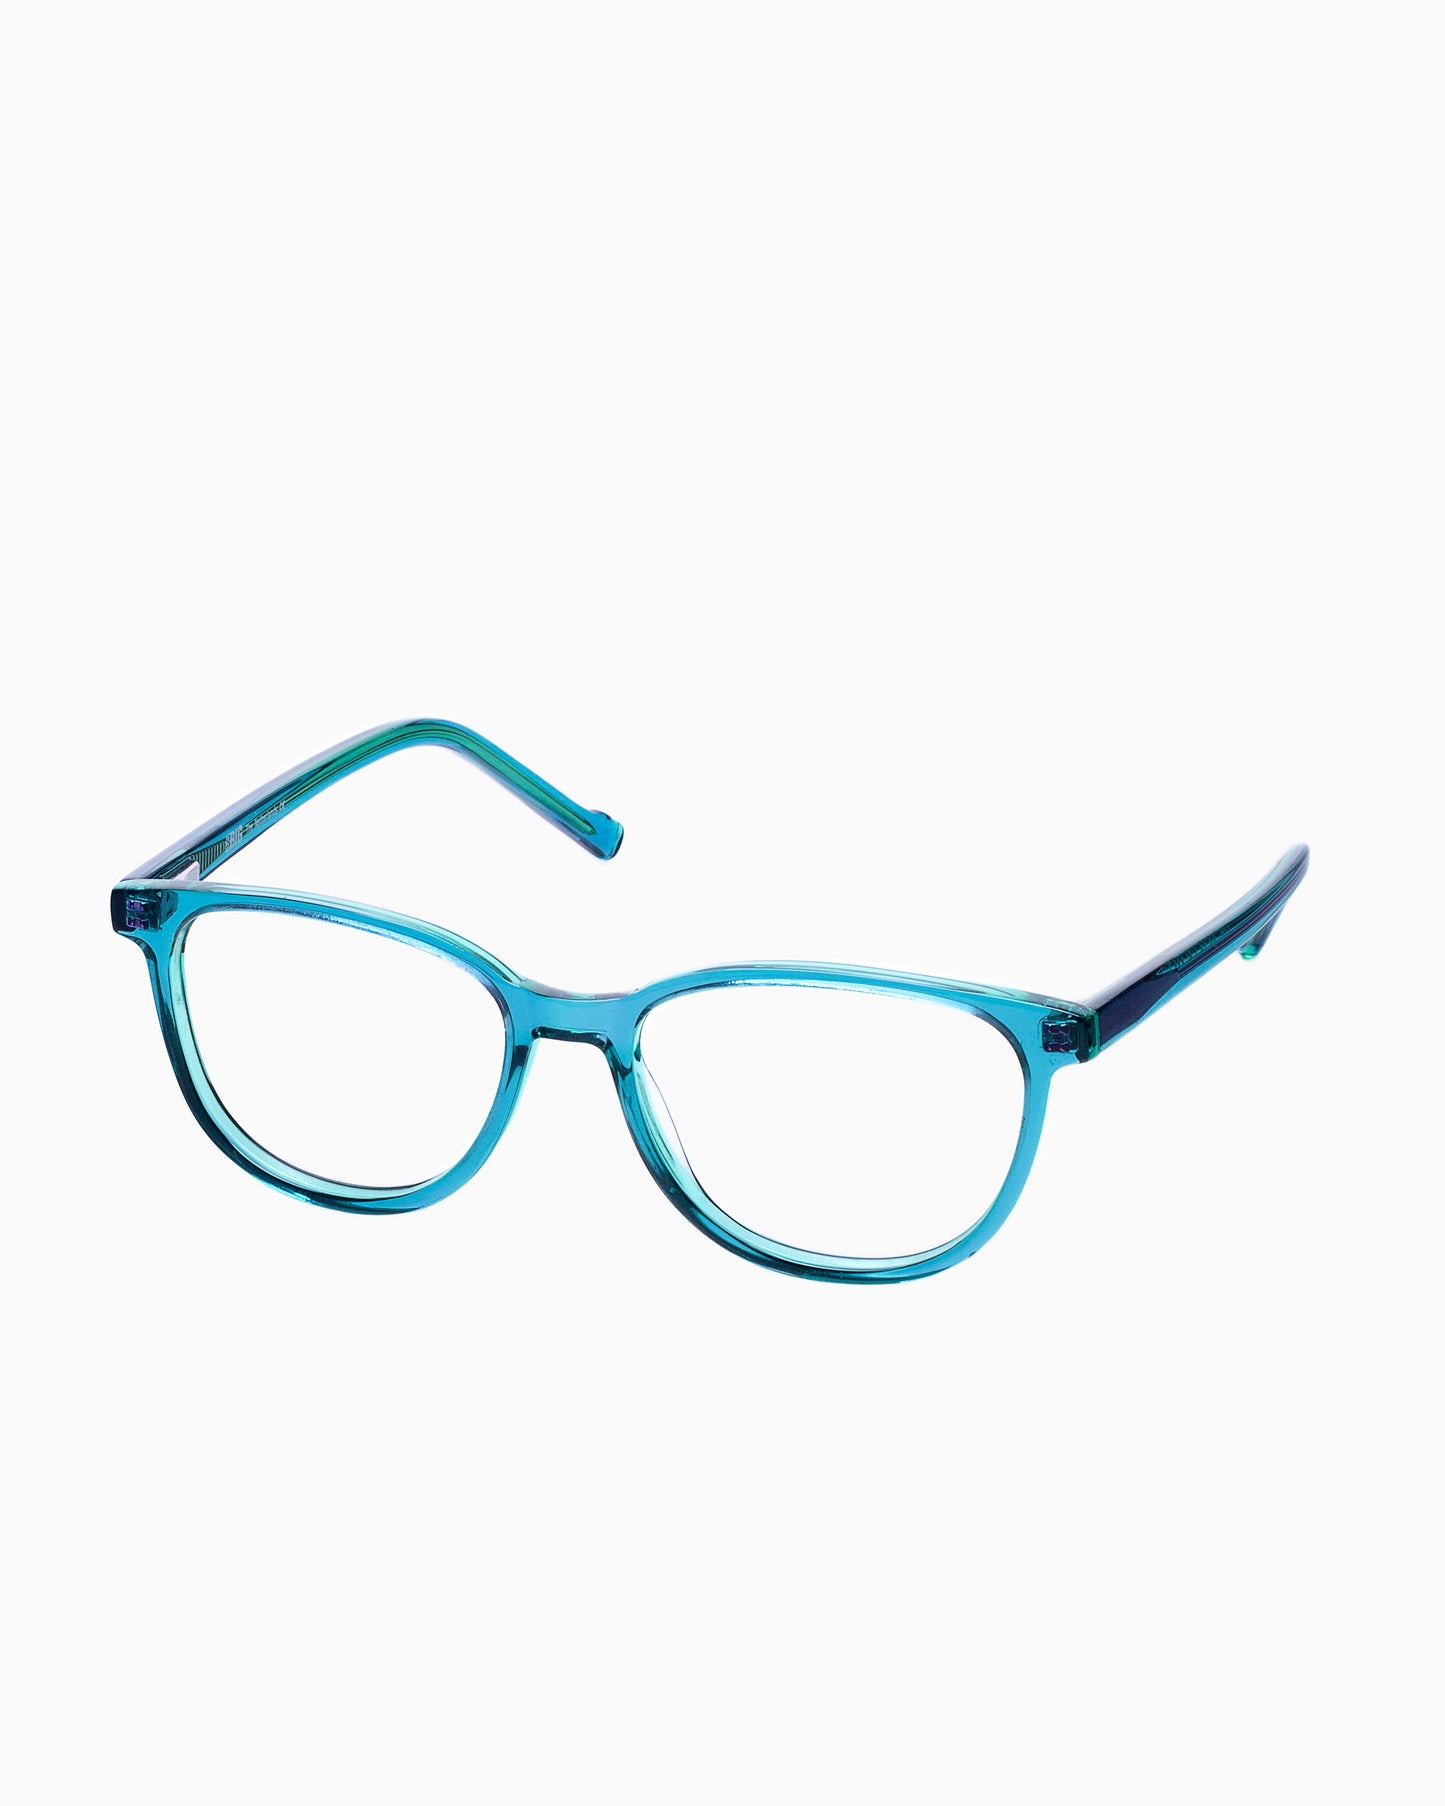 BBig - 236 - 441 | Bar à lunettes